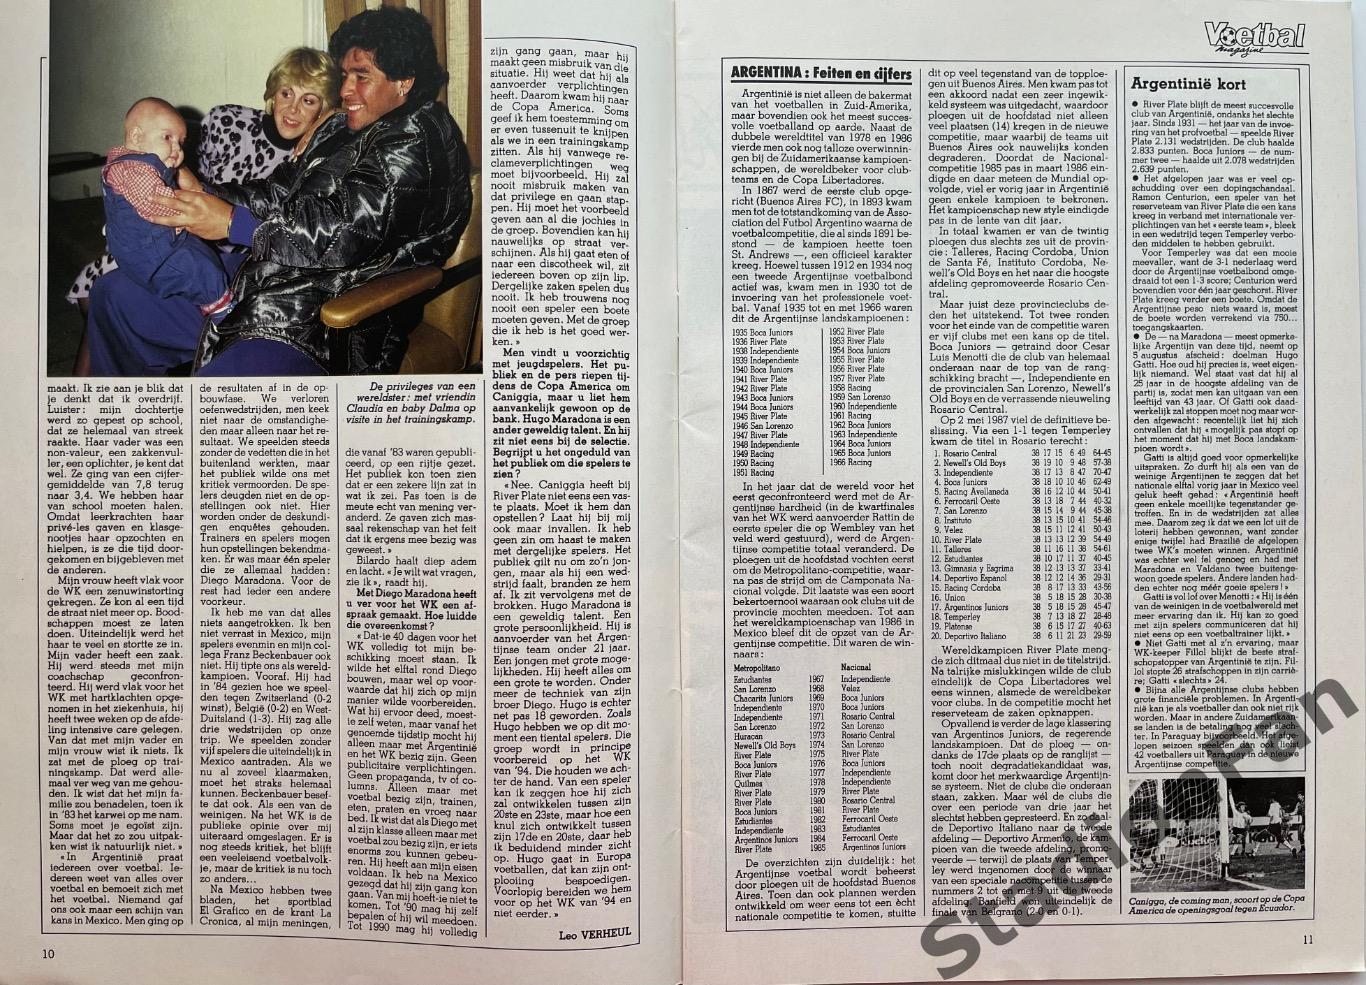 Журнал Voetbal - 1985 год. 5